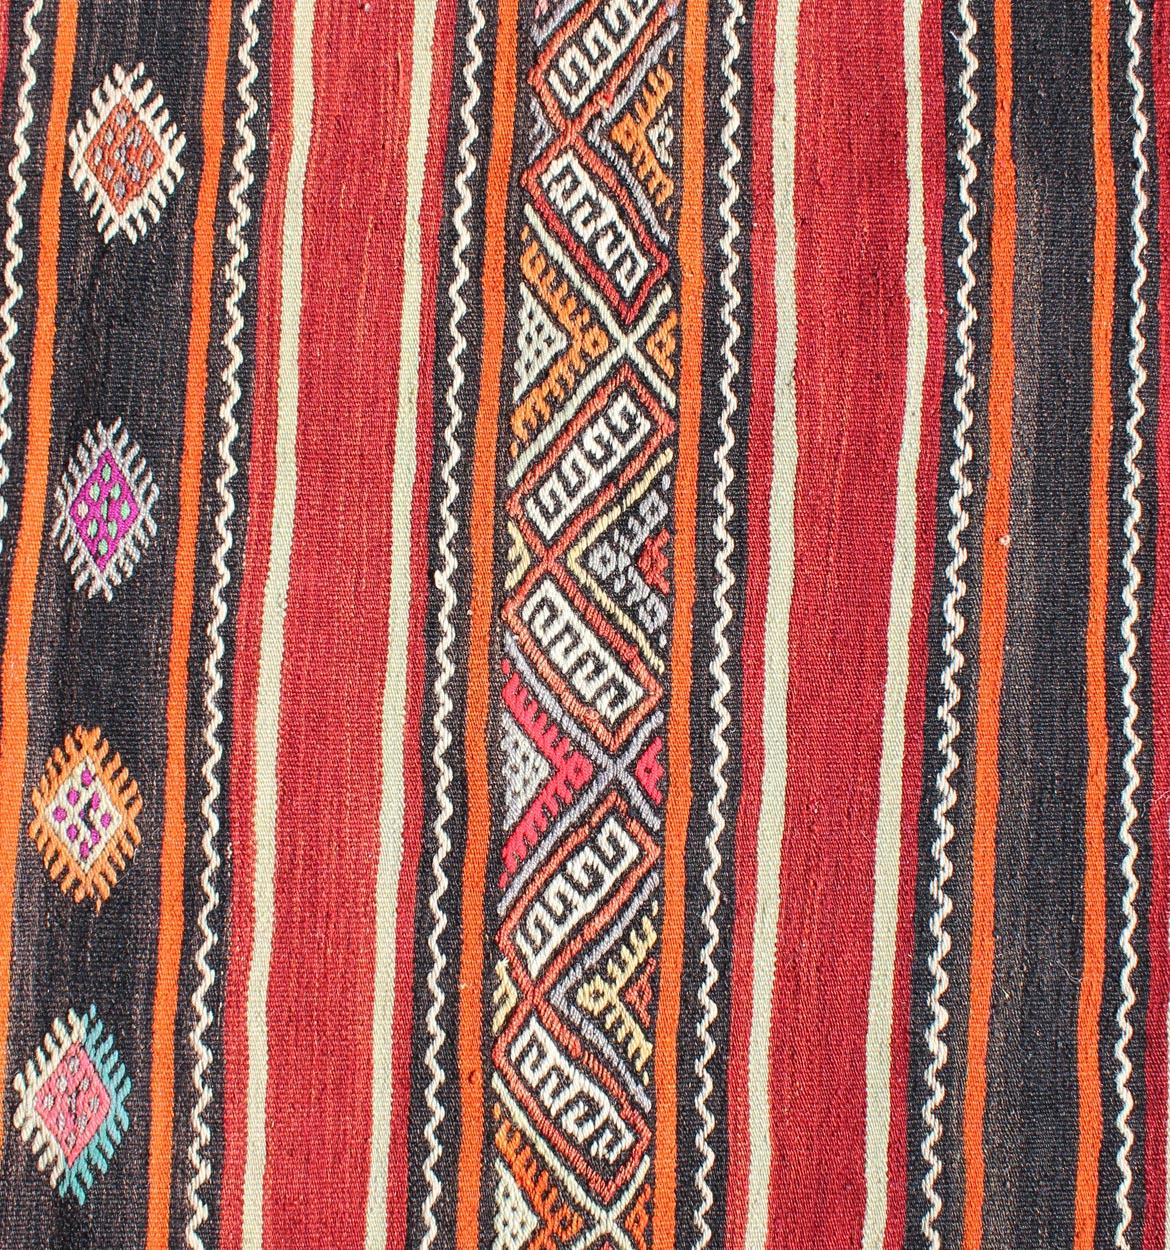 Ein wunderschöner kleiner Stammes-Kilim in Rot, Schwarz und mehreren Farben. Dieses Vintage-Flachgewebe ist zum Teil mit Stickereien verziert.
Maße: 4'2 x 6'